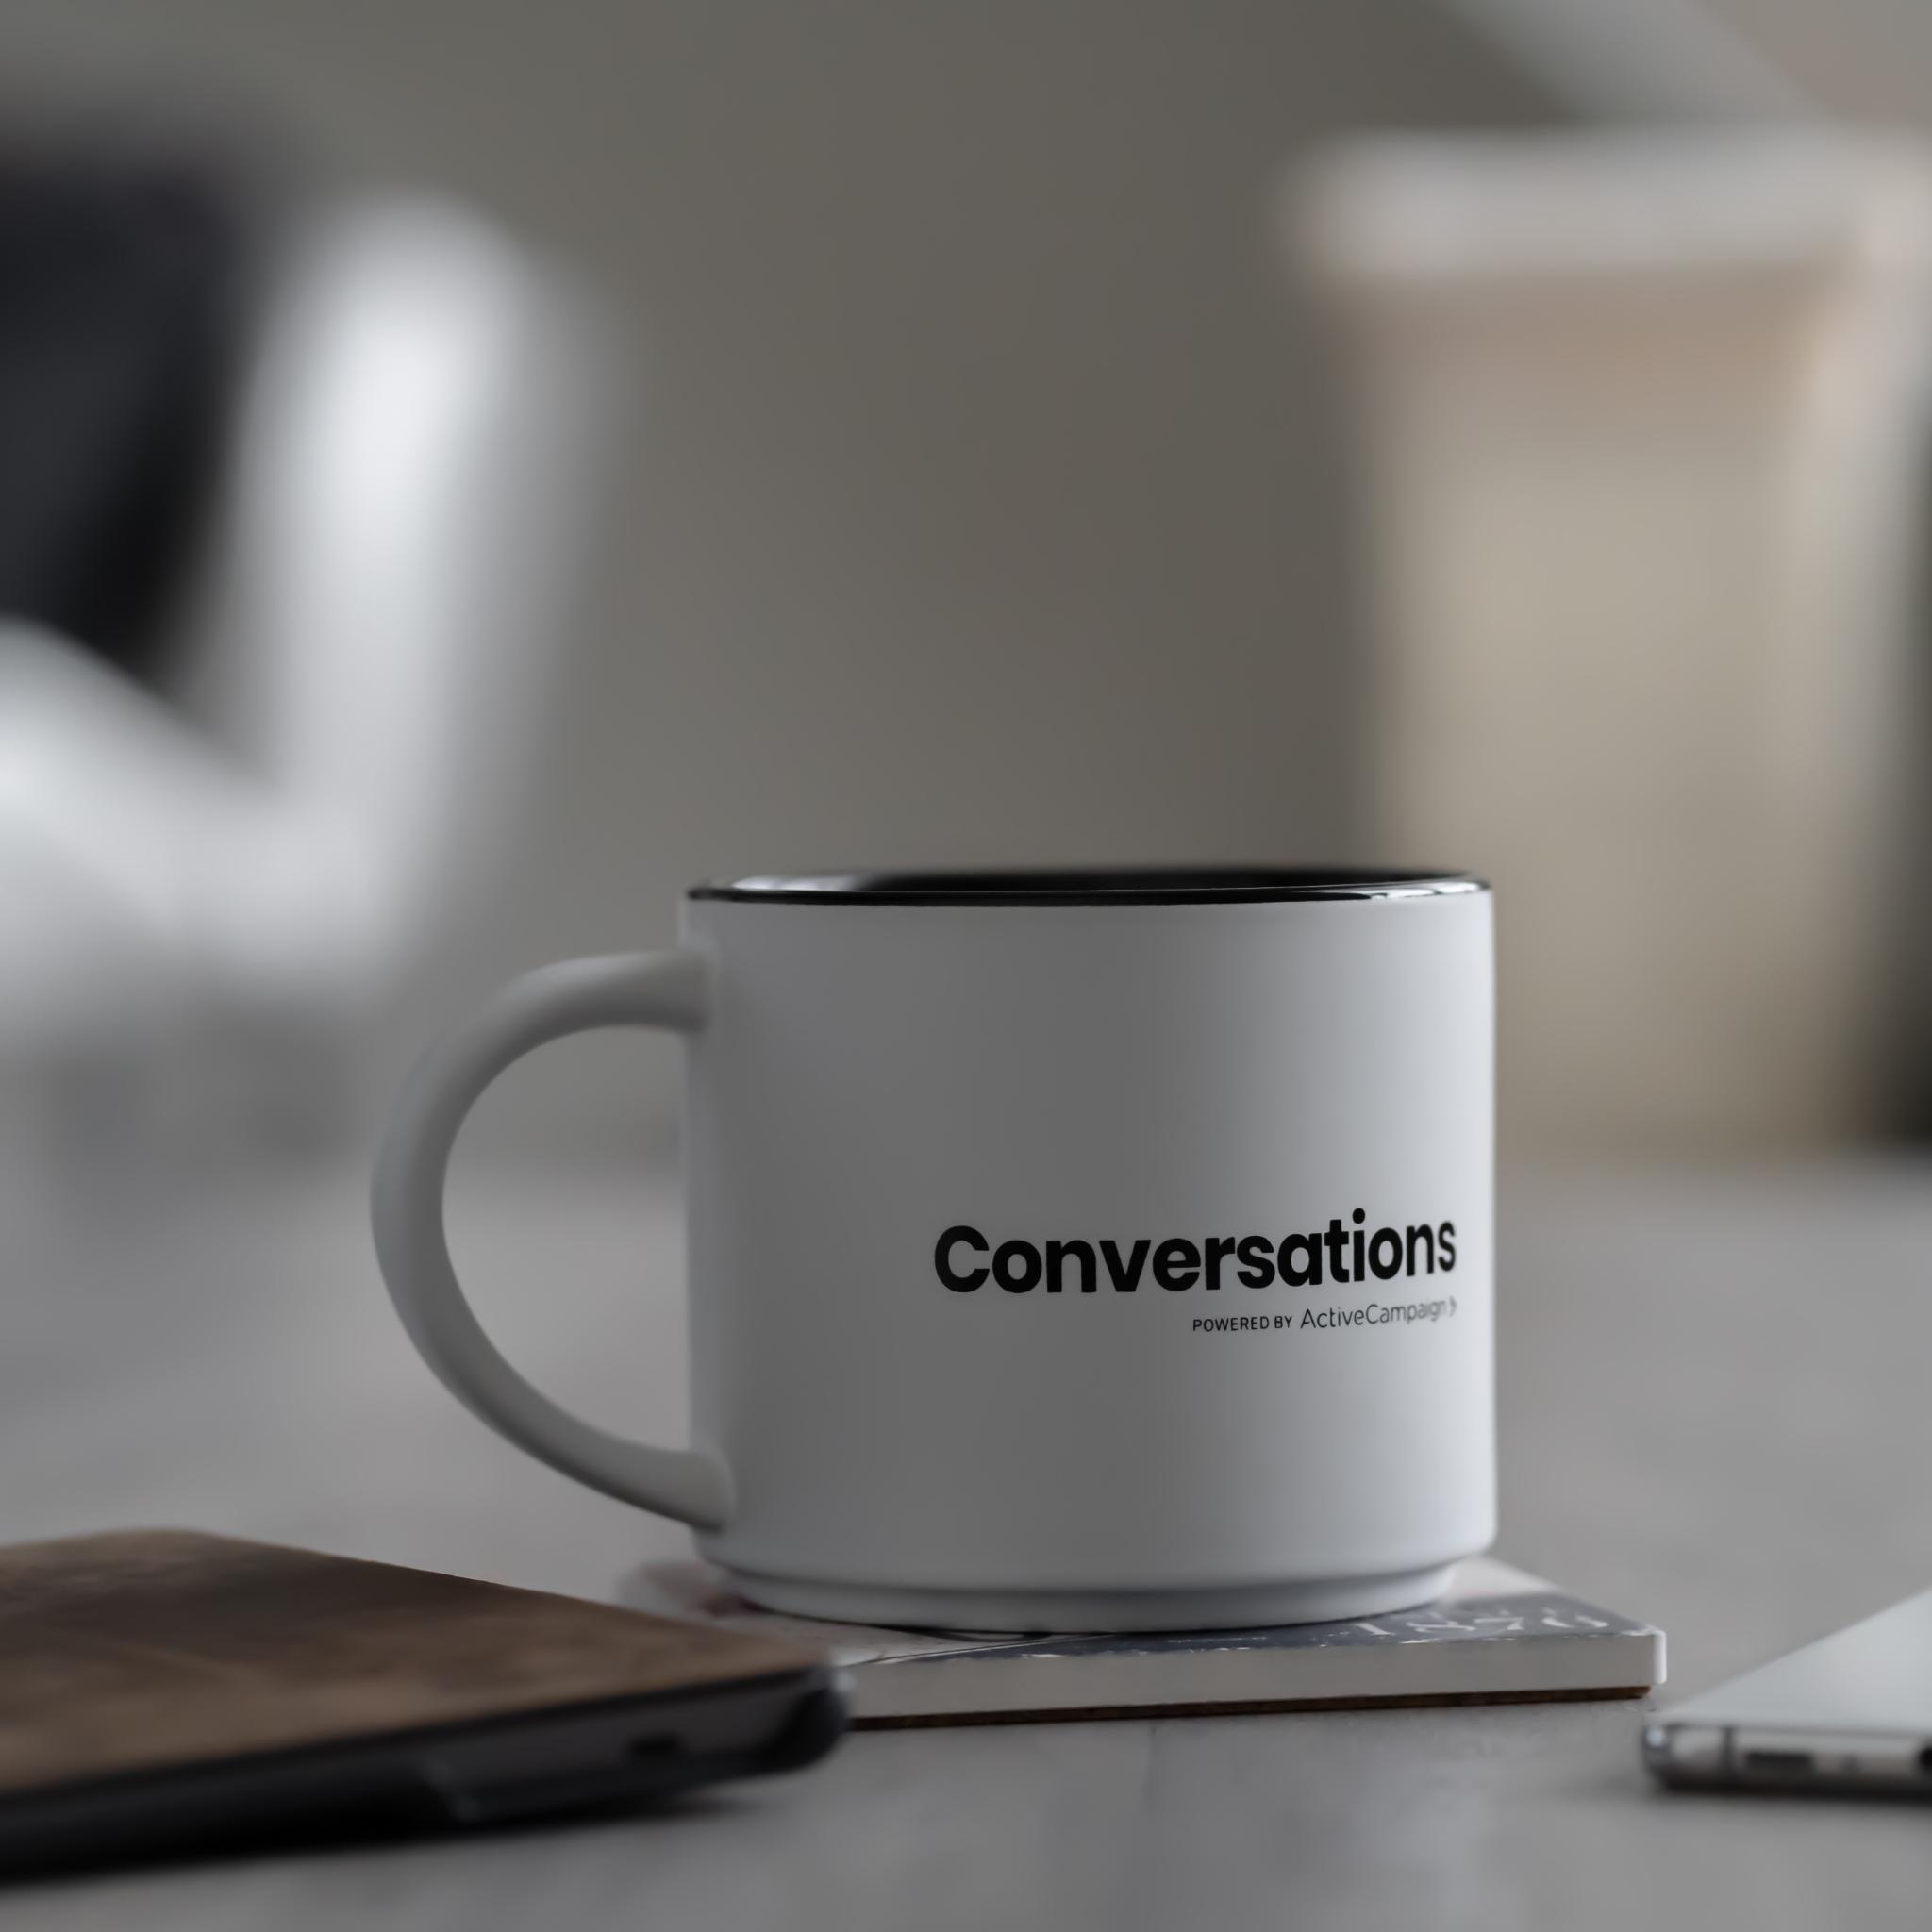 Eine Kaffeetasse mit der Aufschrift converstations steht auf einem Tisch, daneben ein Handy und ein Notebook.